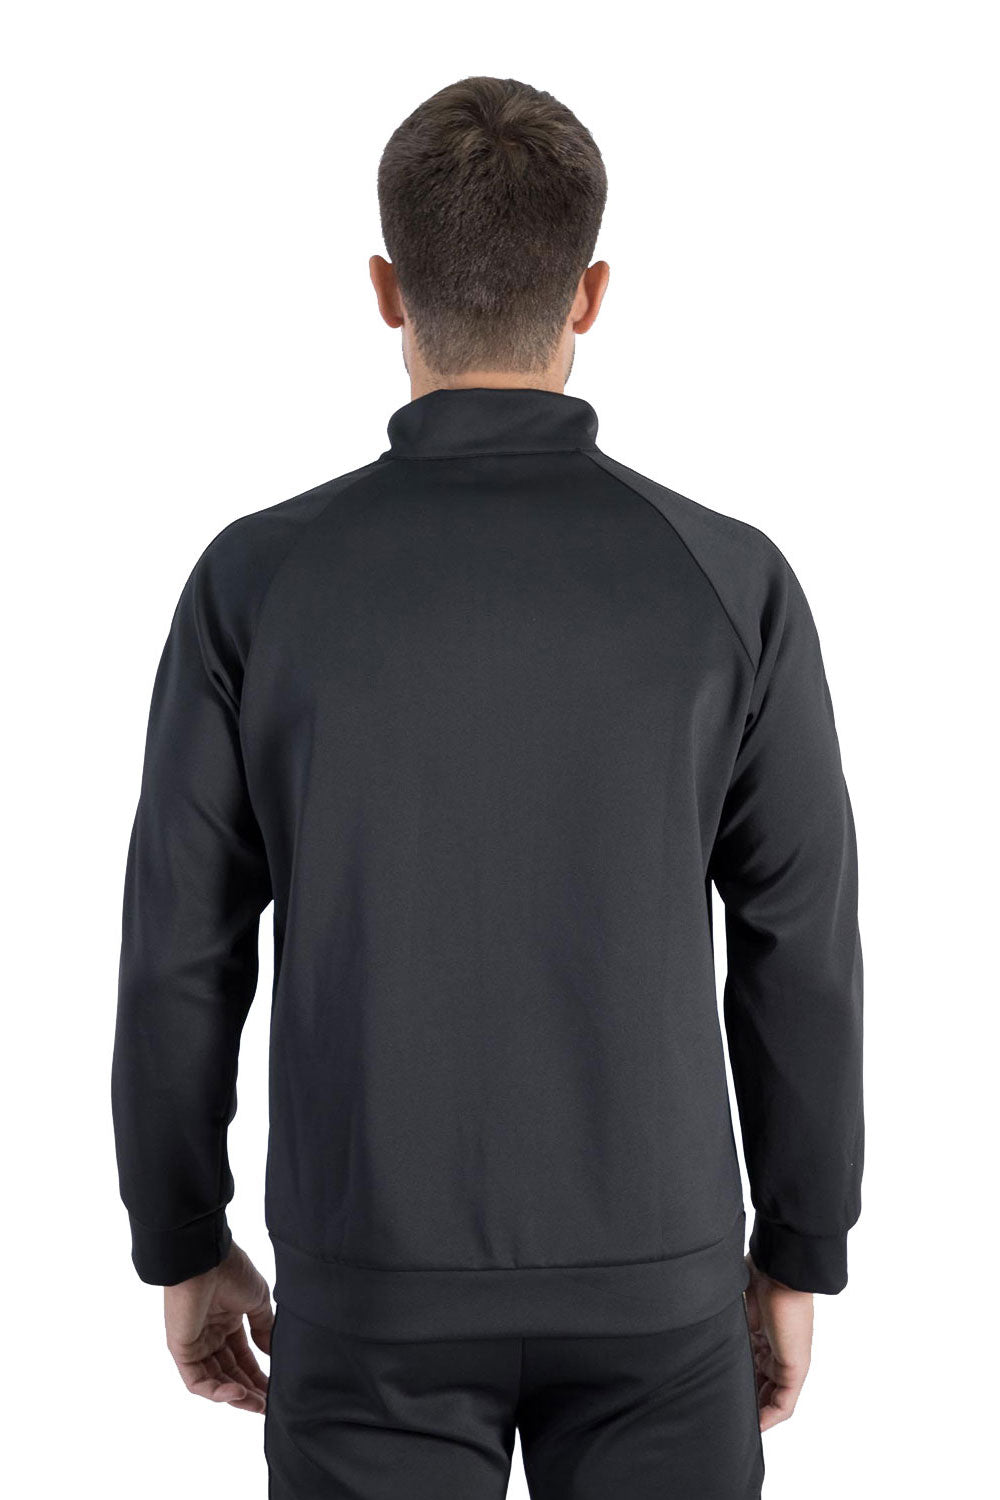 BARABAS Men's Greek Key Pattern Zipper Tracking Suit Jacket SJ100 Black